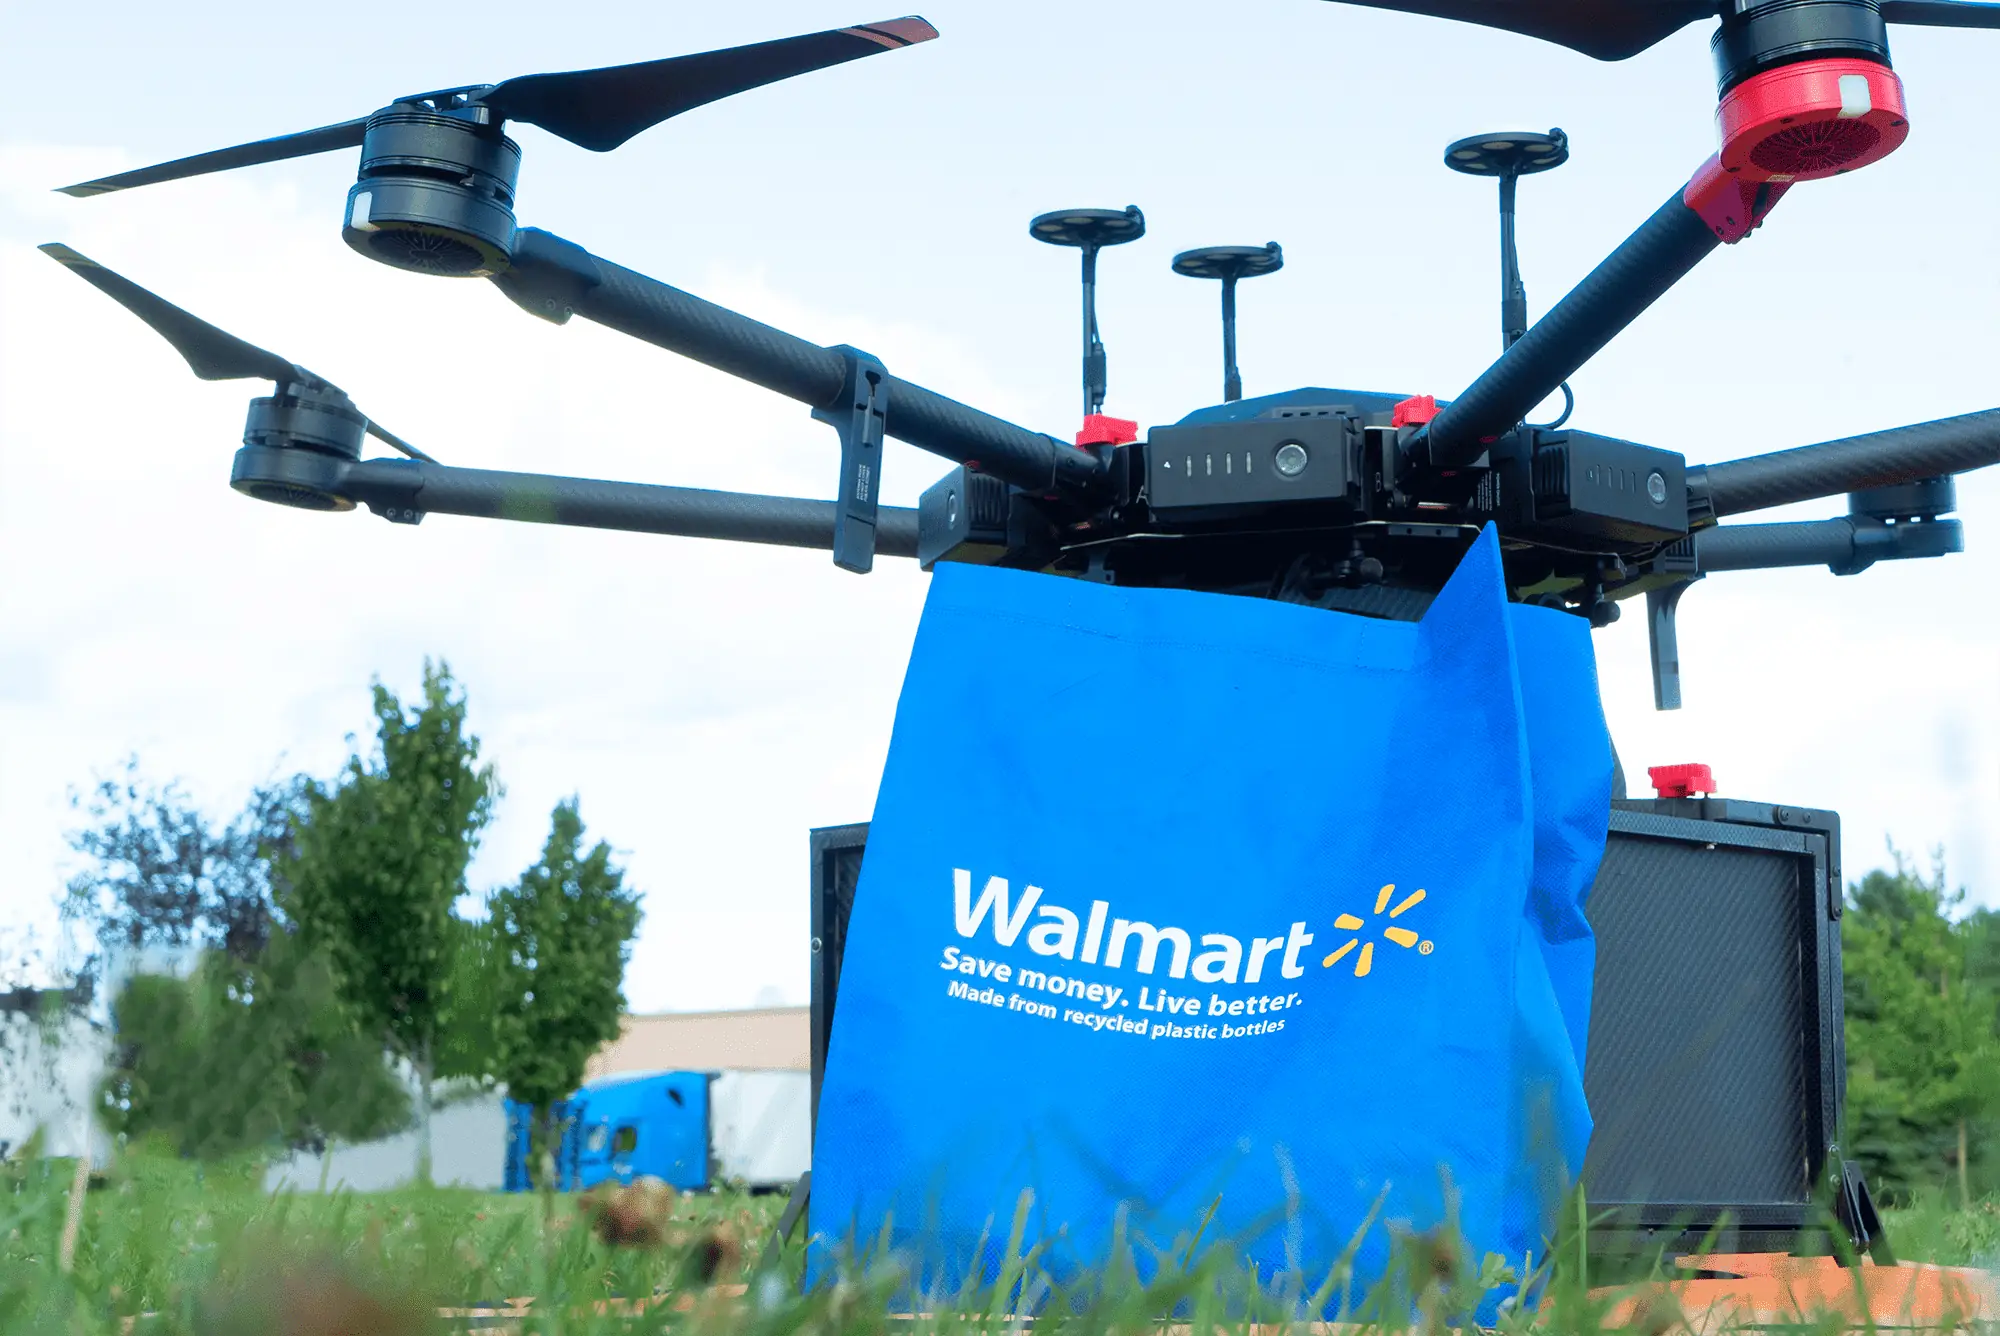 Walmart GoLocal, consegne con droni